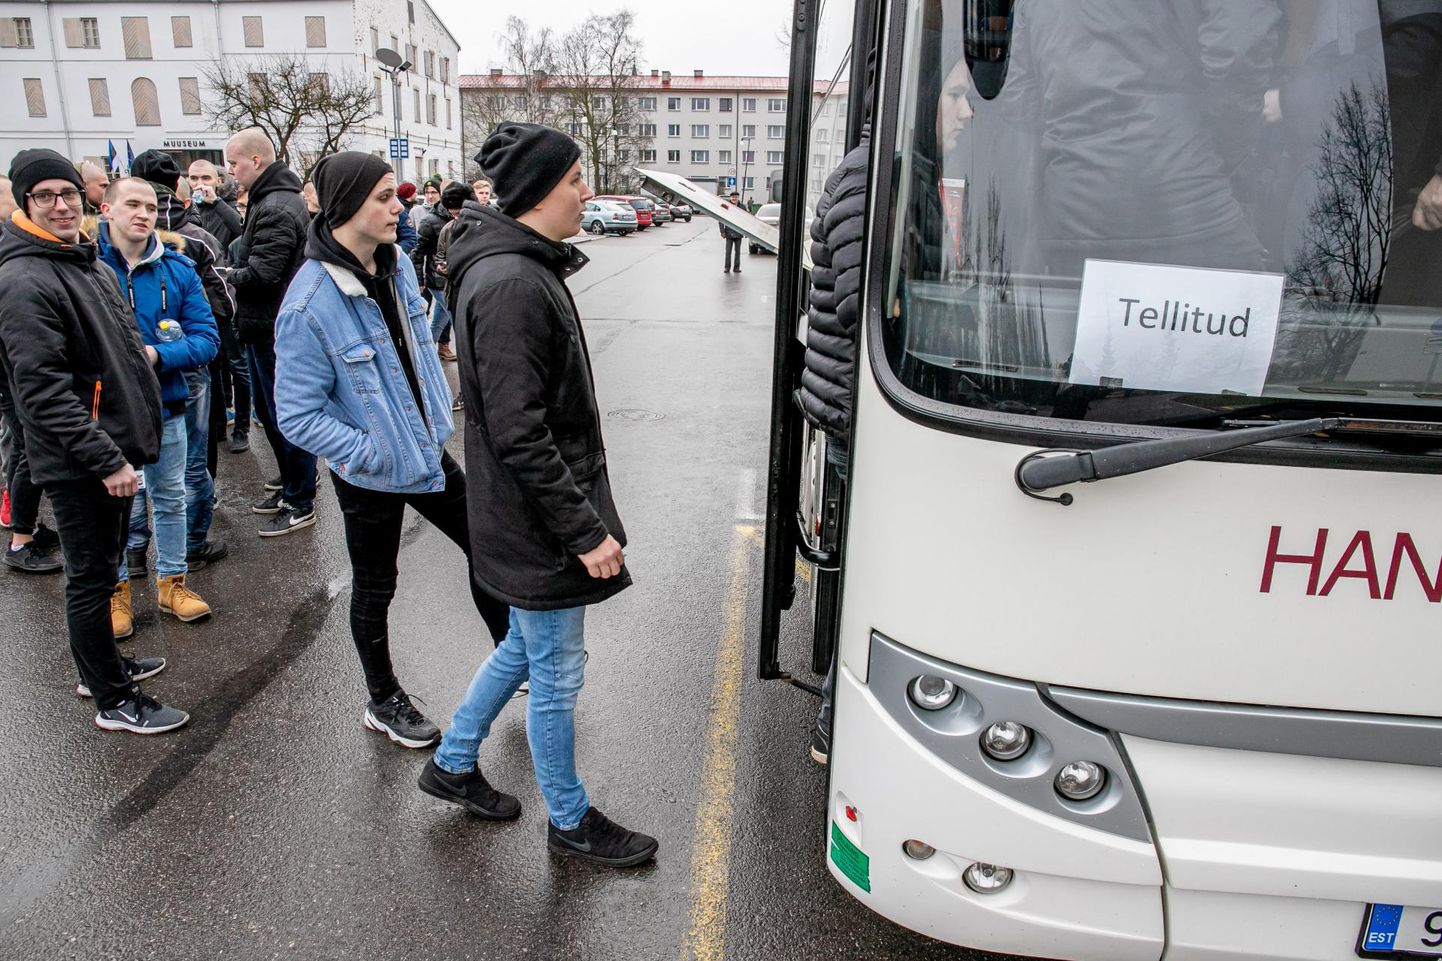 Pärnumaalt läks eile ajateenistusse ligi 40 noormeest. Paljusid neist saatsid Pärnu kontserdimaja ette vuranud bussi vanemad, pruudid ja sõbrad.